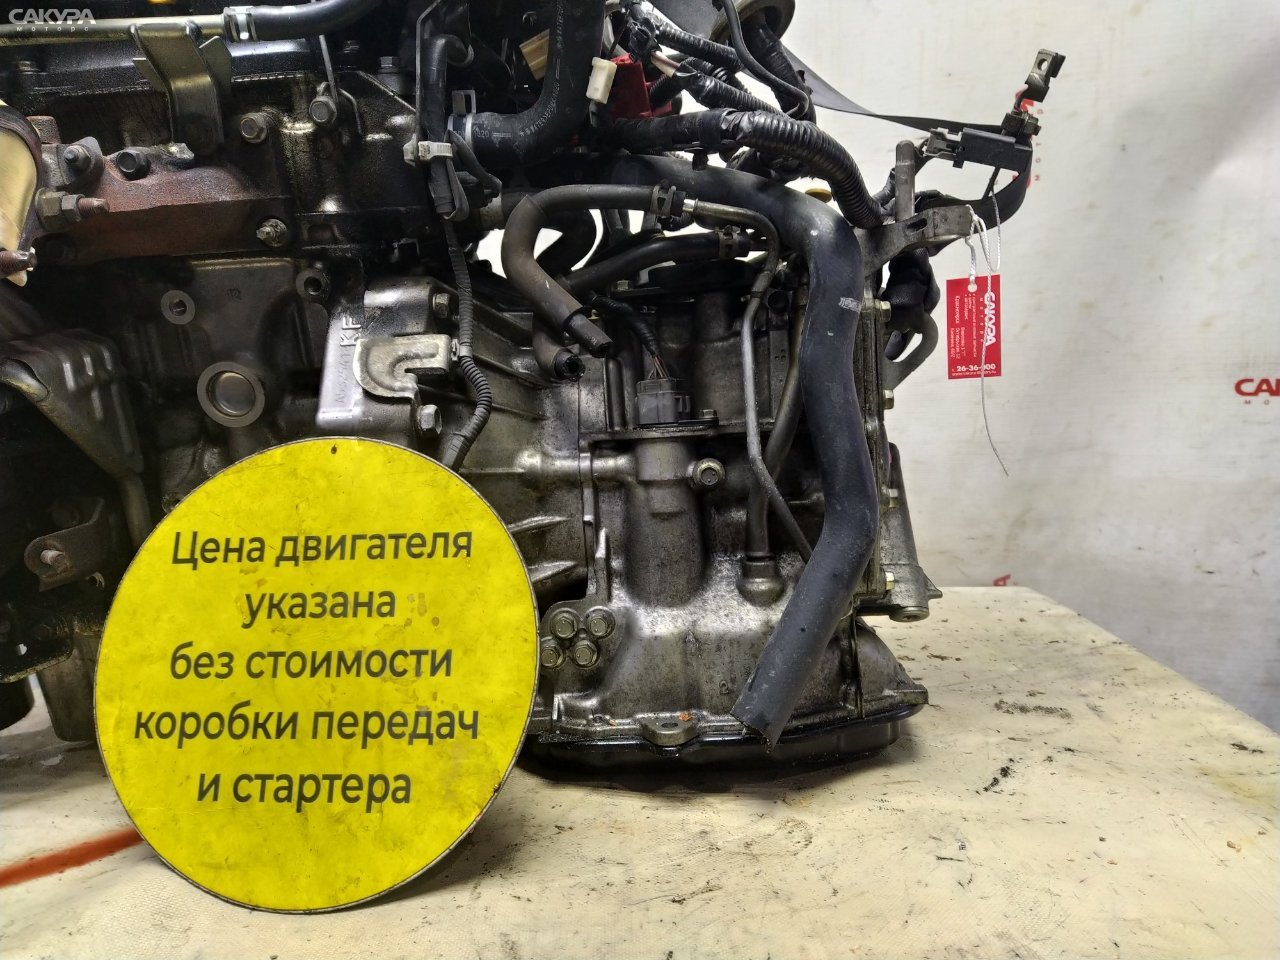 АКПП Daihatsu Move L175S KF-DET: купить в Сакура Красноярск.